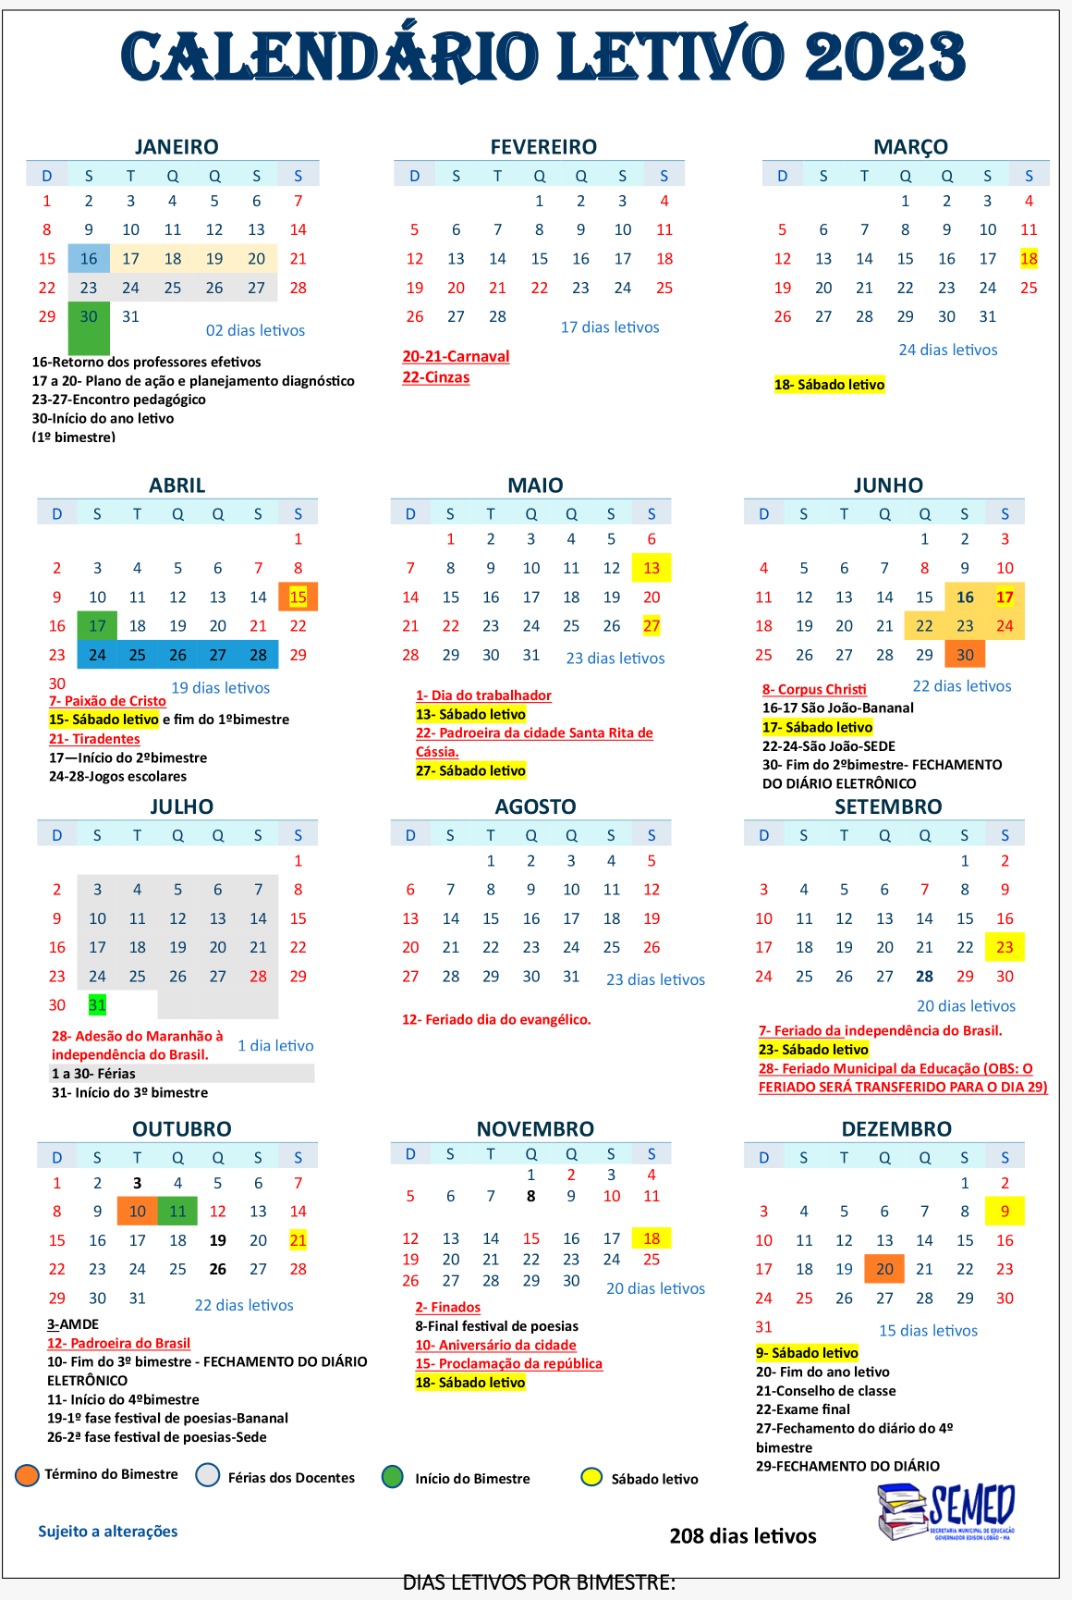 Calendário Letivo 2023